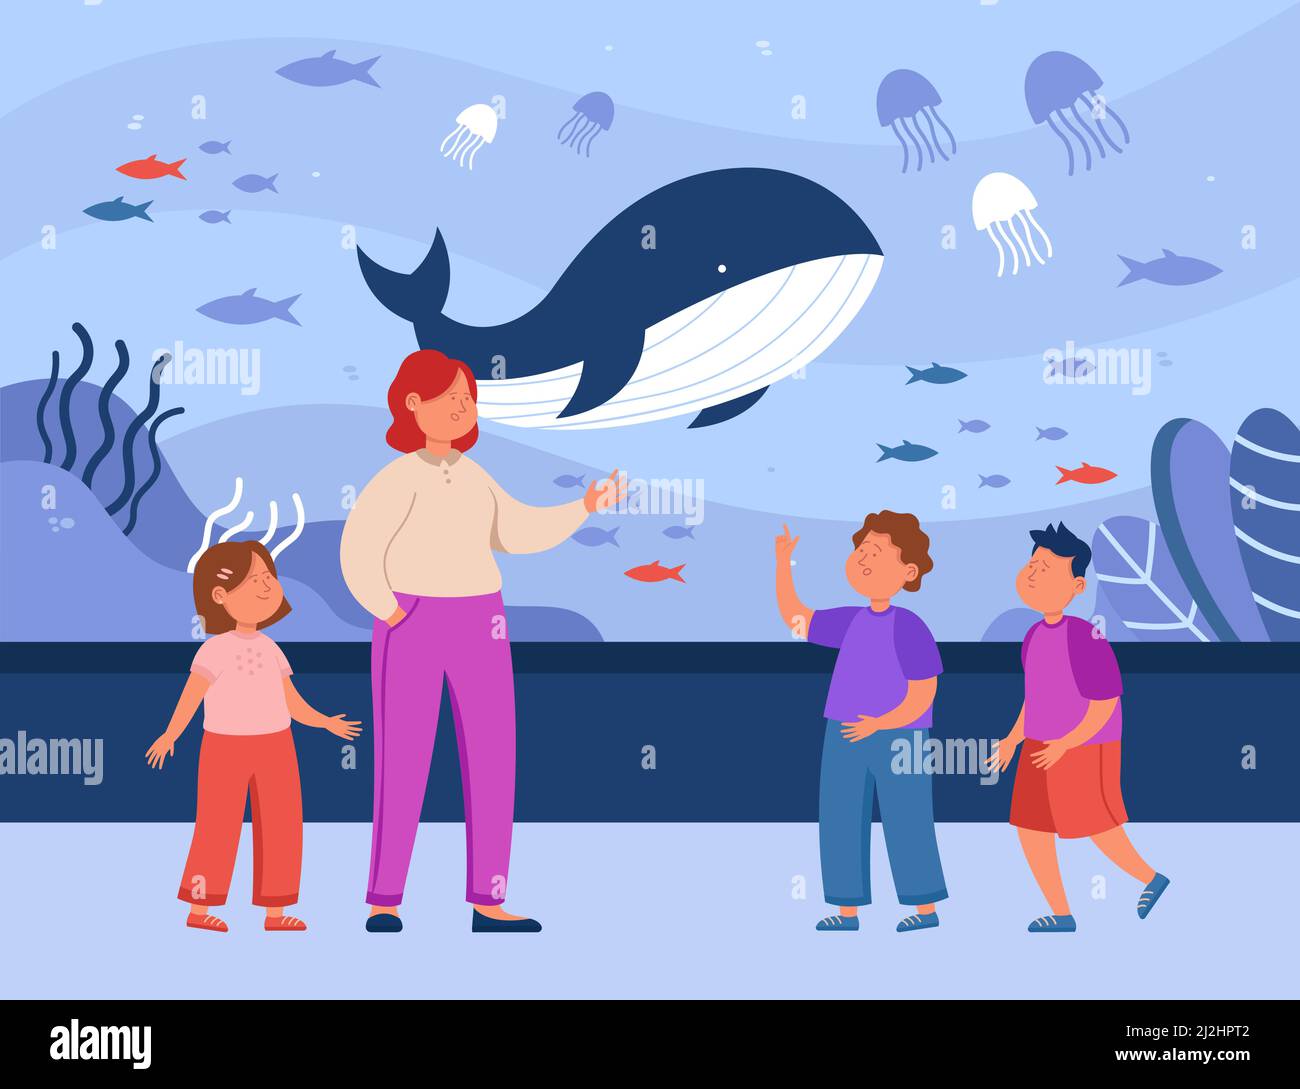 Madre y niños de dibujos animados mirando a los animales del océano en el acuario. Mujer y niños en el zoológico submarino ilustración de vector plano. Familia, fauna marina conc Ilustración del Vector